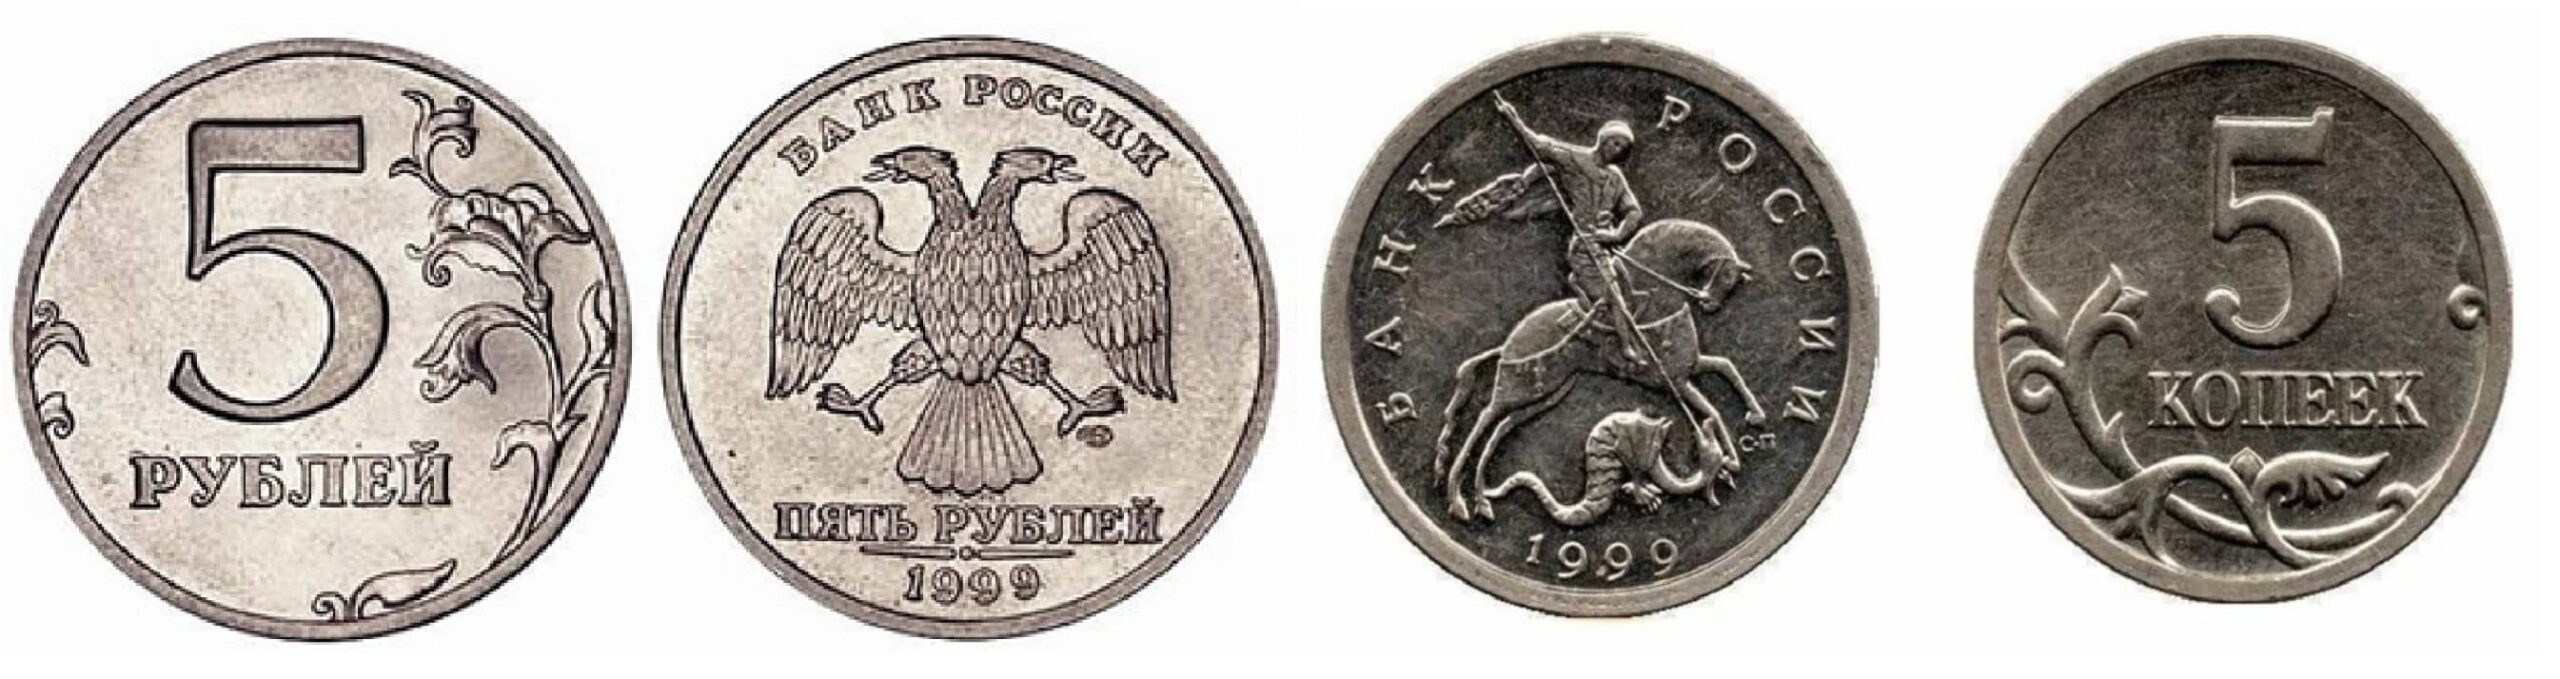 5 рублей 18 года. 5 Копеек 1999. Привидение монета. Польша 2 гроша 1999 год - герб.